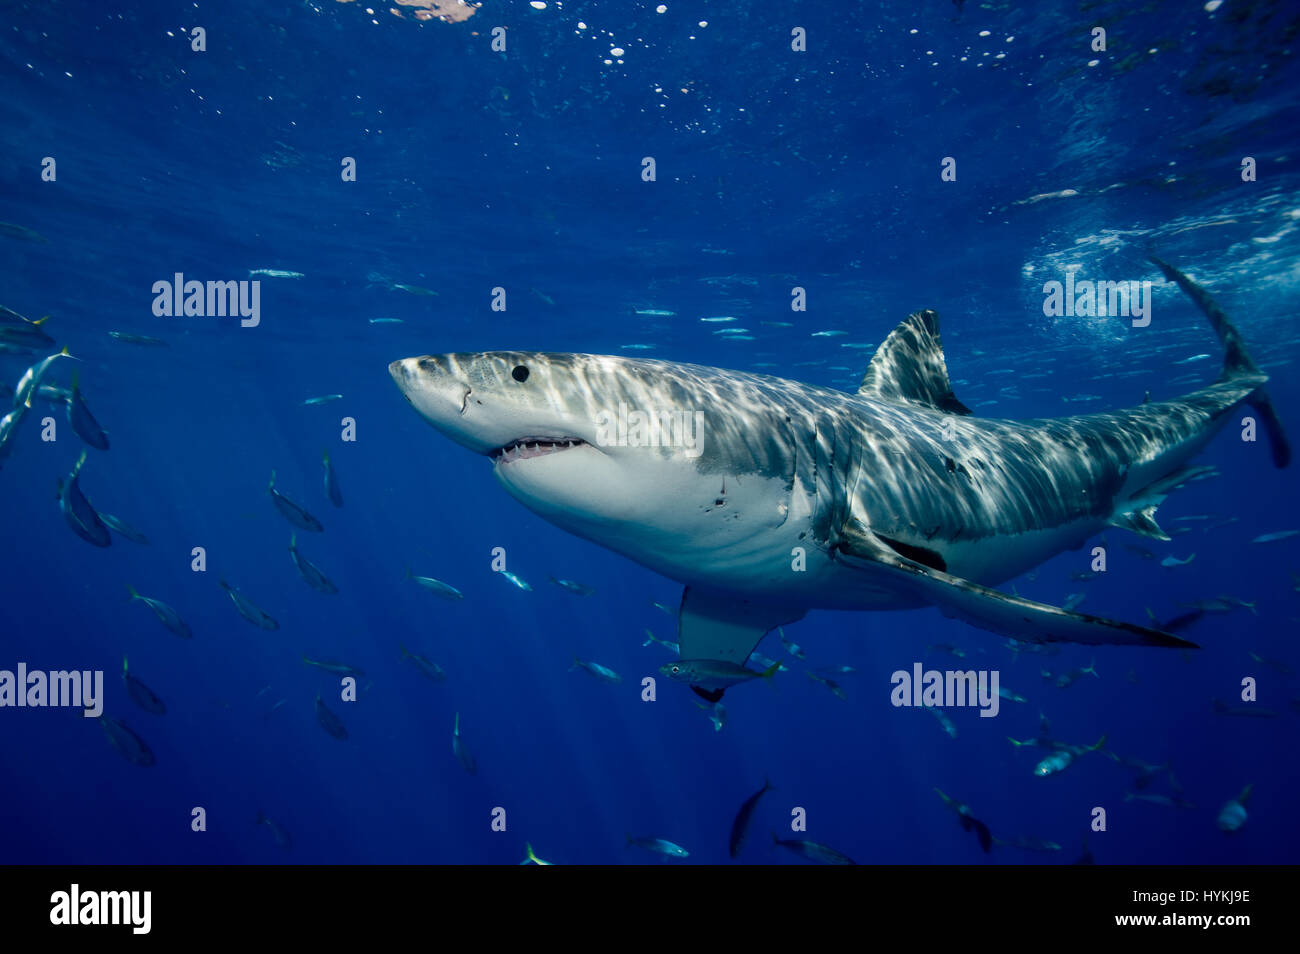 De superbes images ont capturé ce qui pourrait être le plus grand requin  blanc dans le monde. L'immense prédateur vient face à face avec deux  plongeurs dans une cage qu'il met à